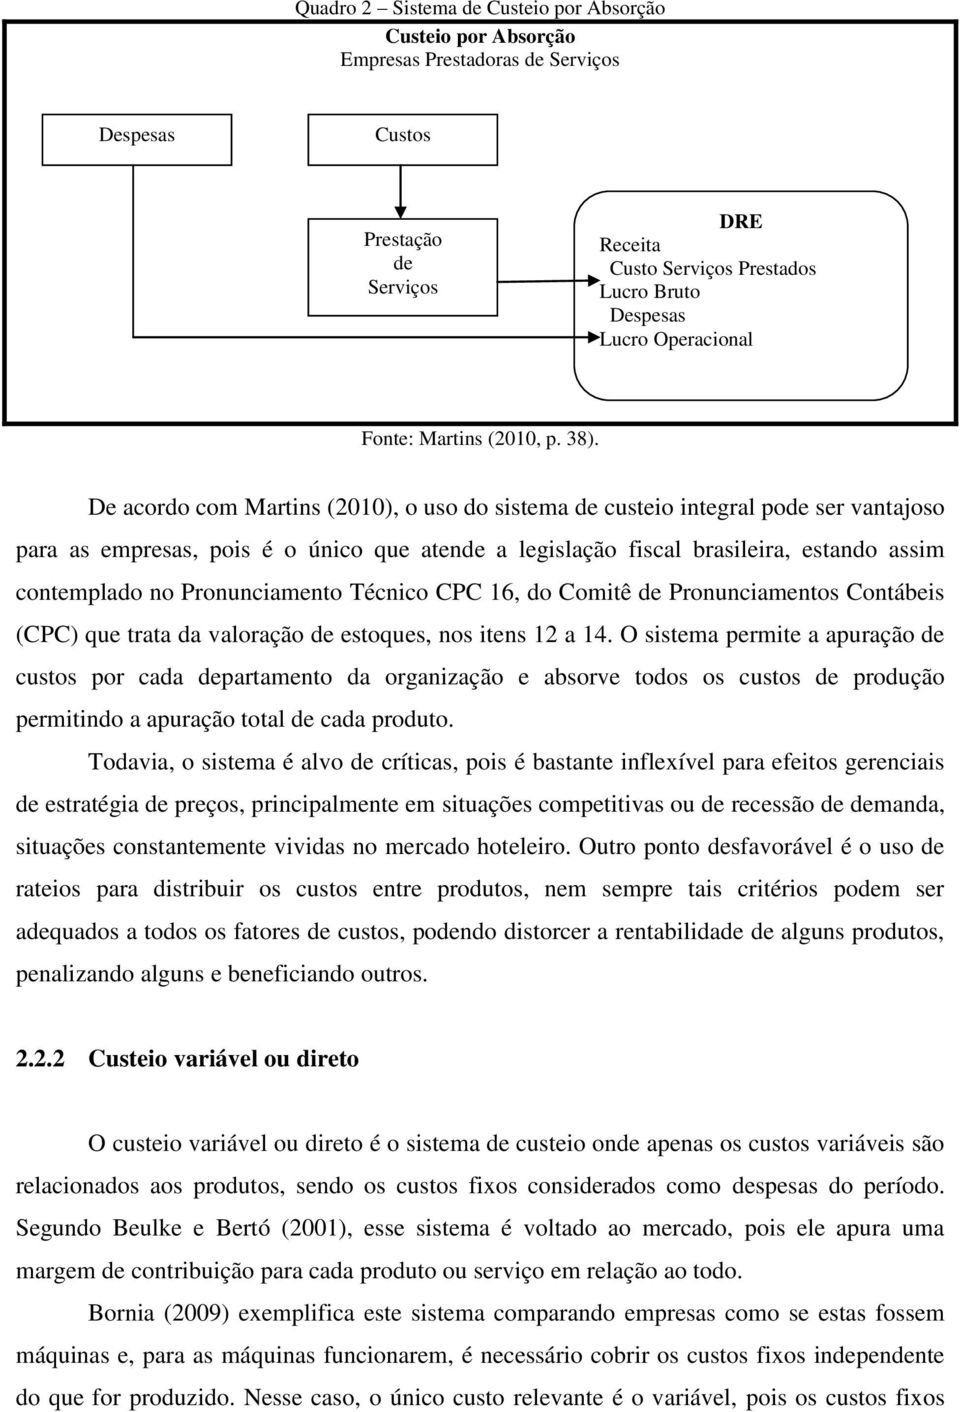 De acordo com Martins (2010), o uso do sistema de custeio integral pode ser vantajoso para as empresas, pois é o único que atende a legislação fiscal brasileira, estando assim contemplado no